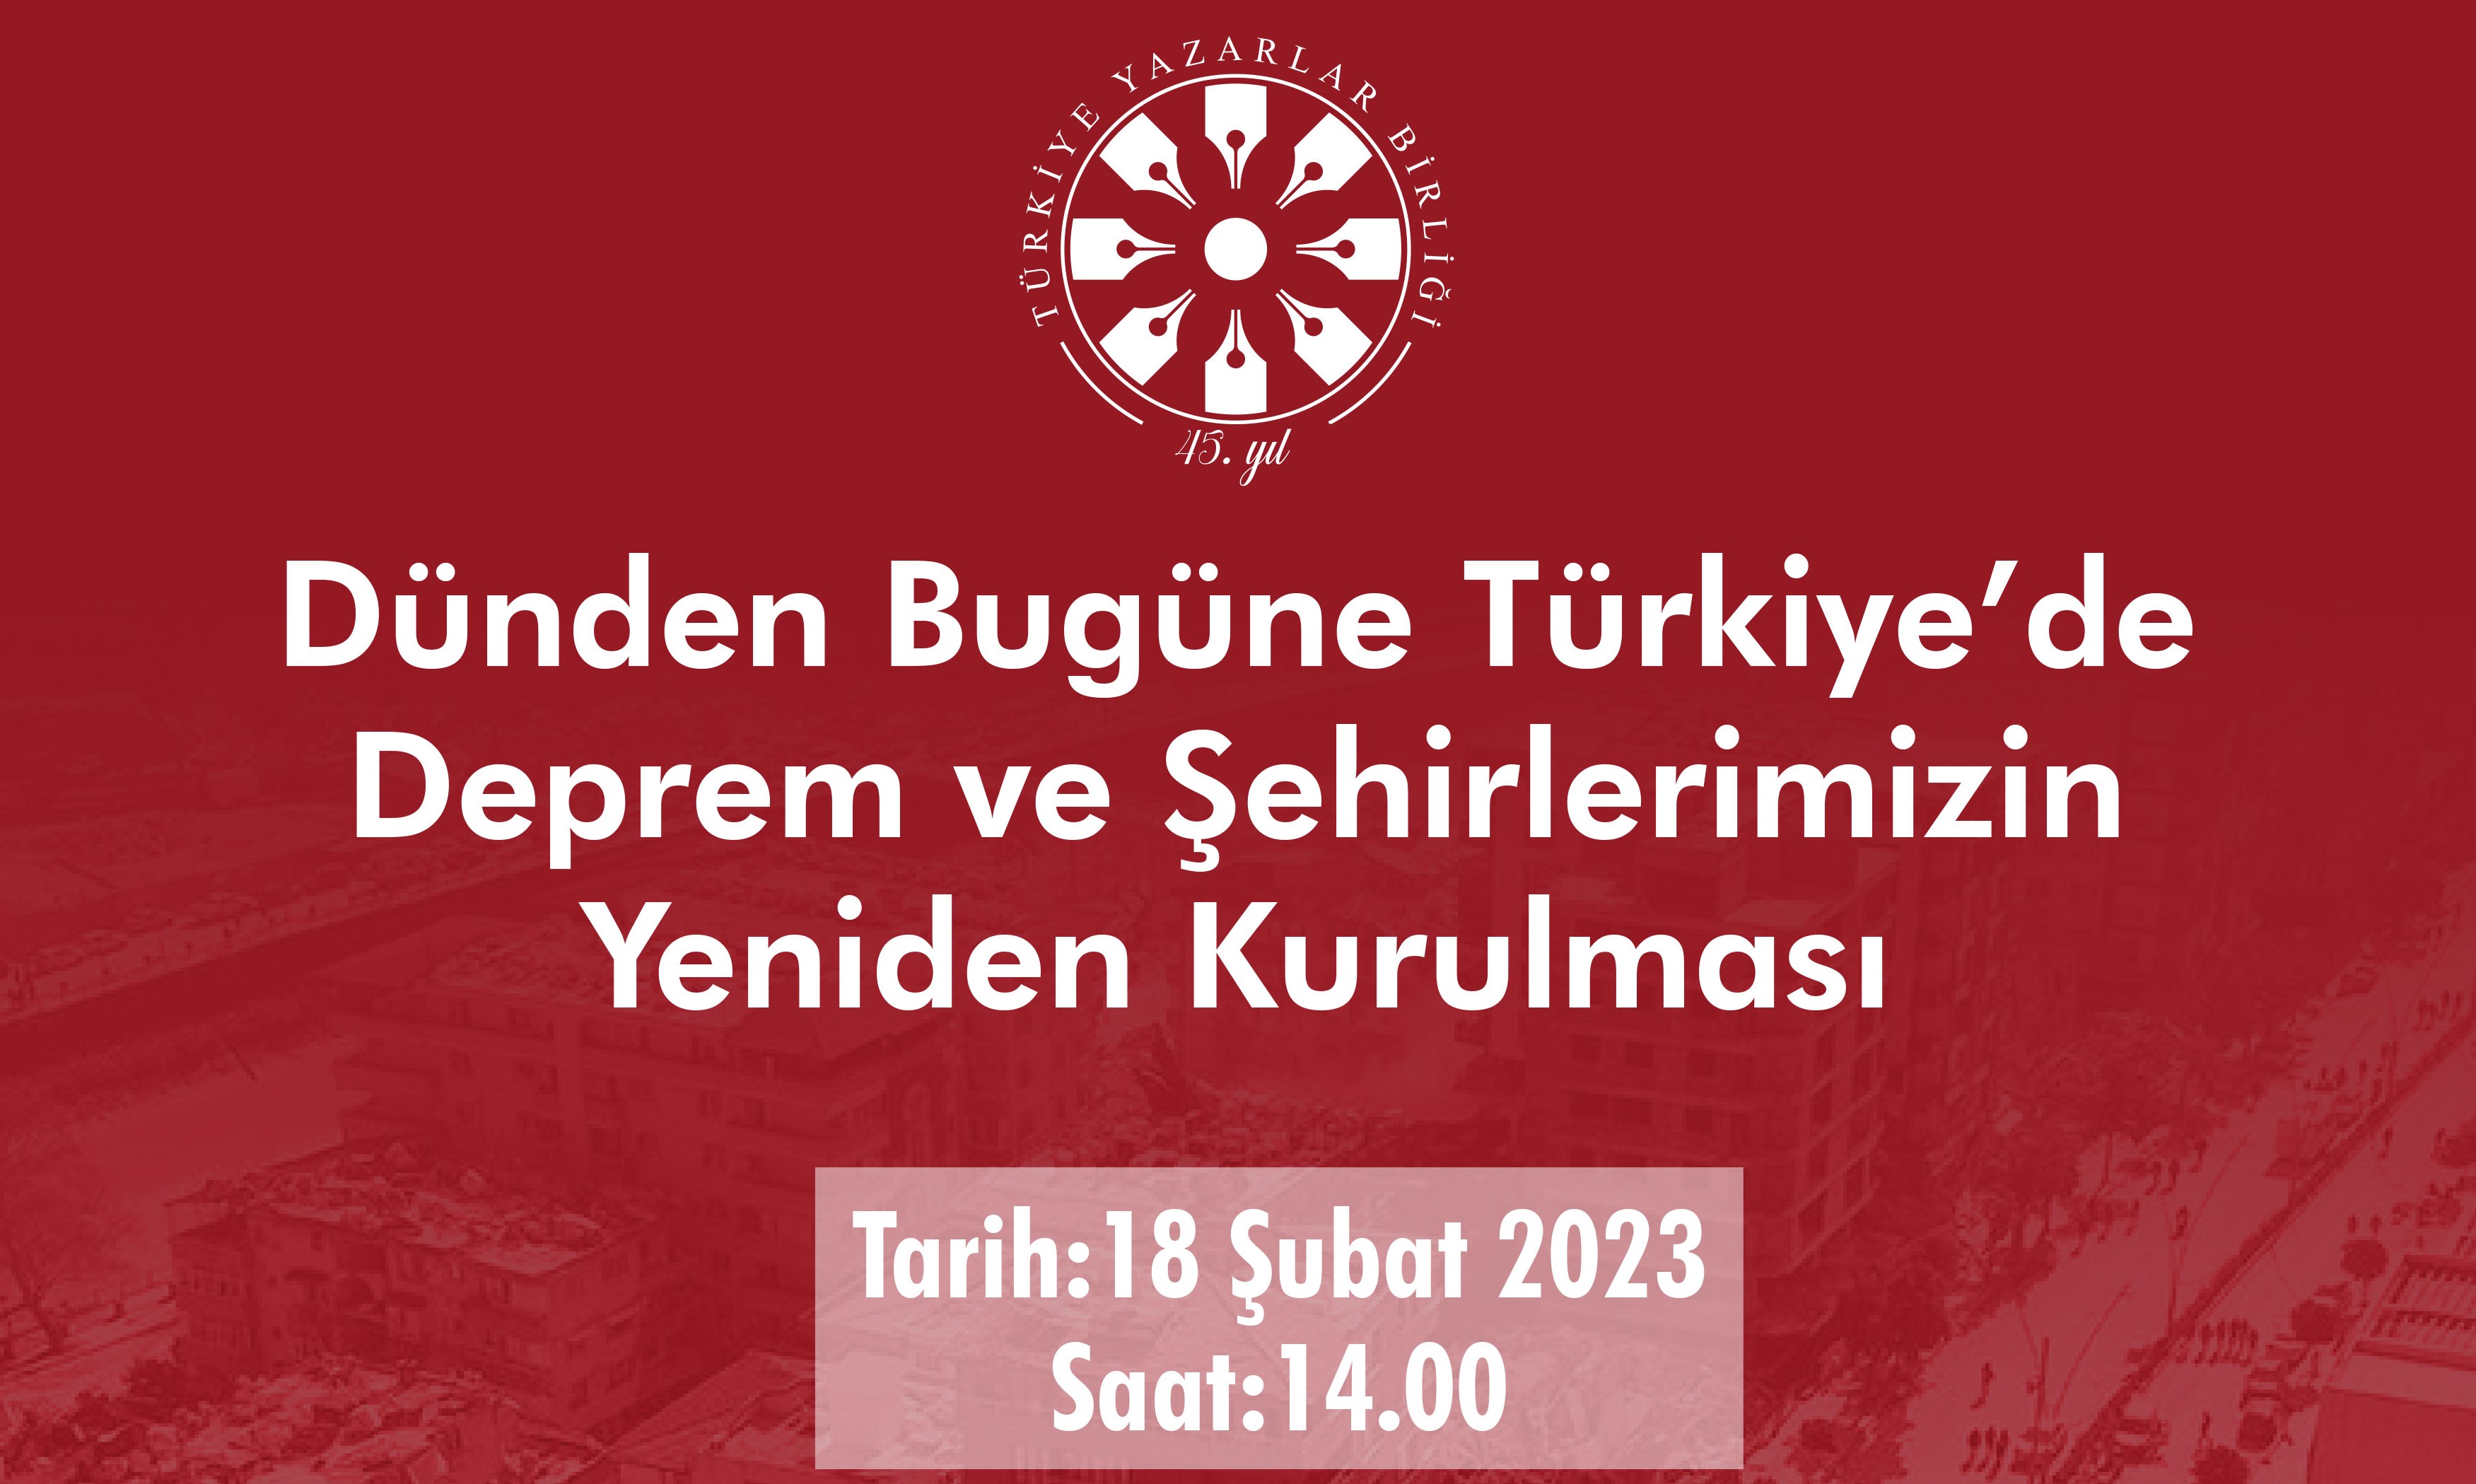 “Dünden bugüne Türkiye’de deprem ve şehirlerimizin yeniden kurulması”